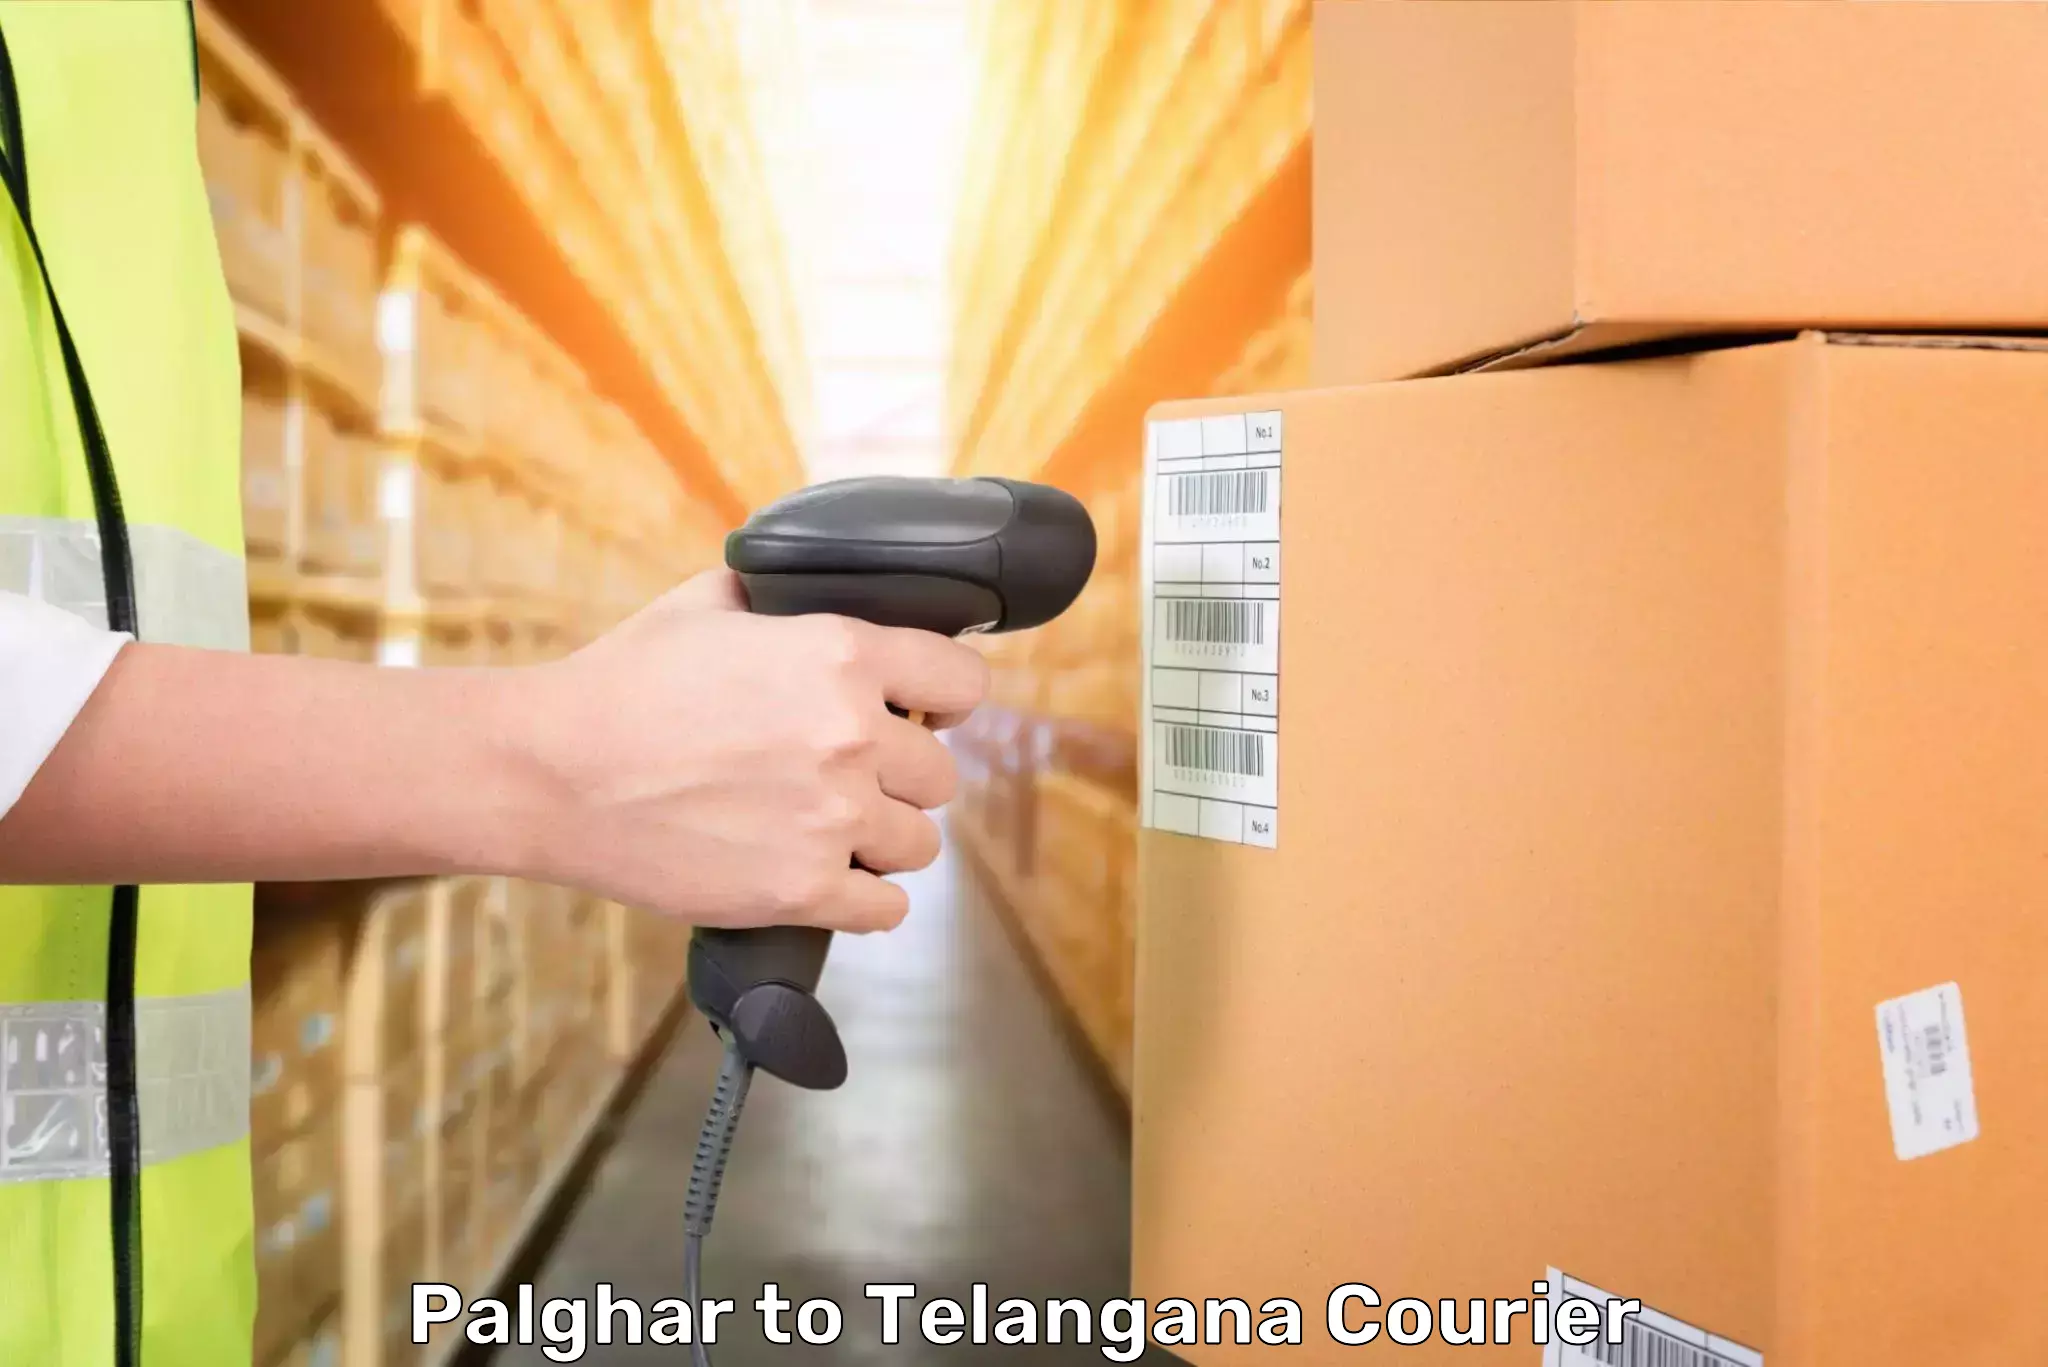 Same day luggage service Palghar to Telangana